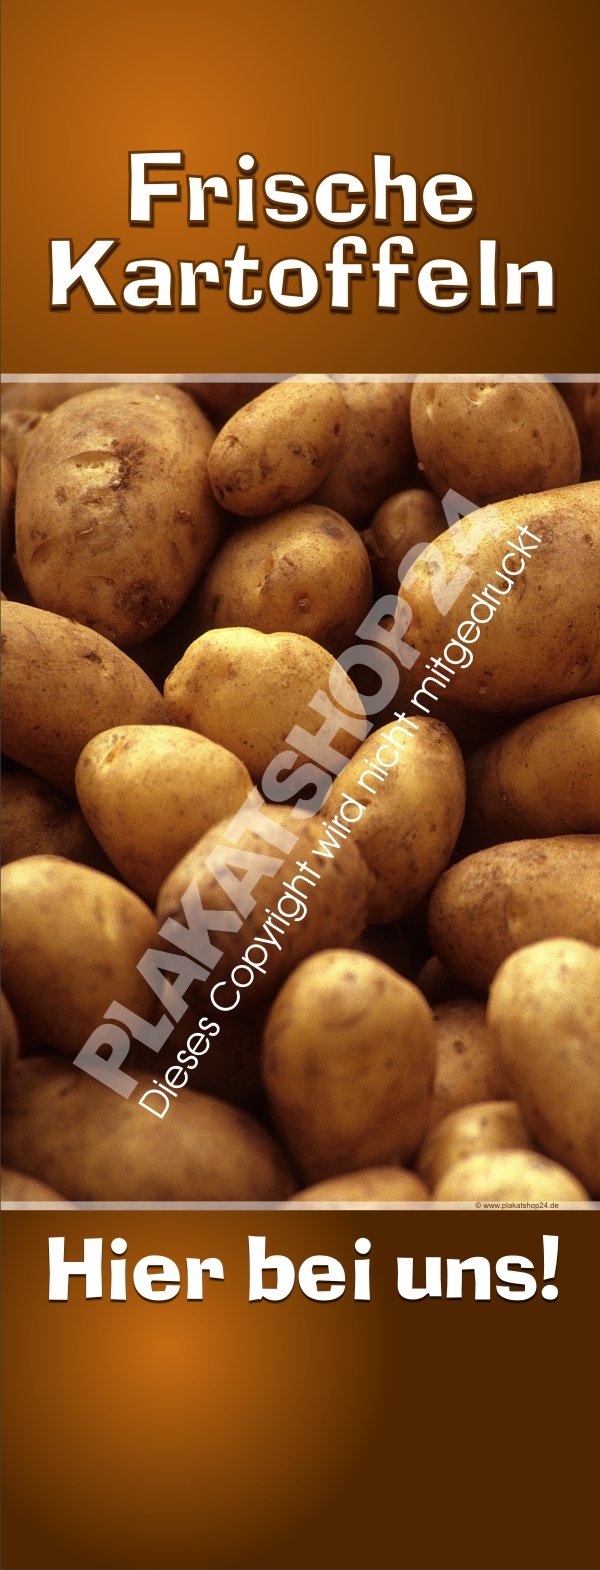 Kartoffel-Werbebanner für den Verkauf von frischen Kartoffeln